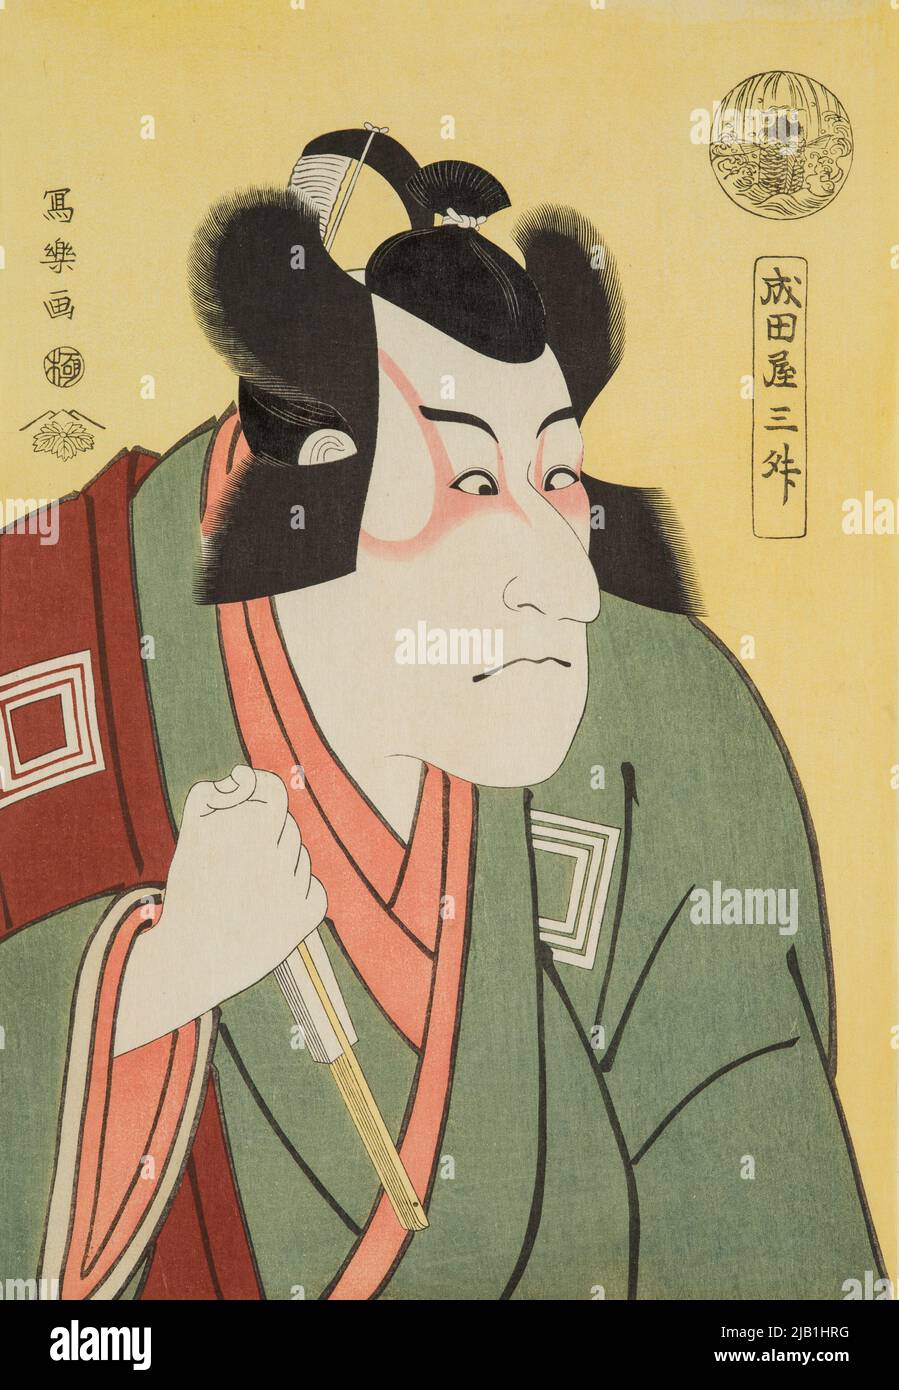 AKTOR ICHIKAWA DANJURO VI W ROLI Arakawa Taro W Dramacie Sugawara Denju Tenari, Autora Takeda Izumo Toshusai, Sharaku (FL. 1780 1825) Stock Photo